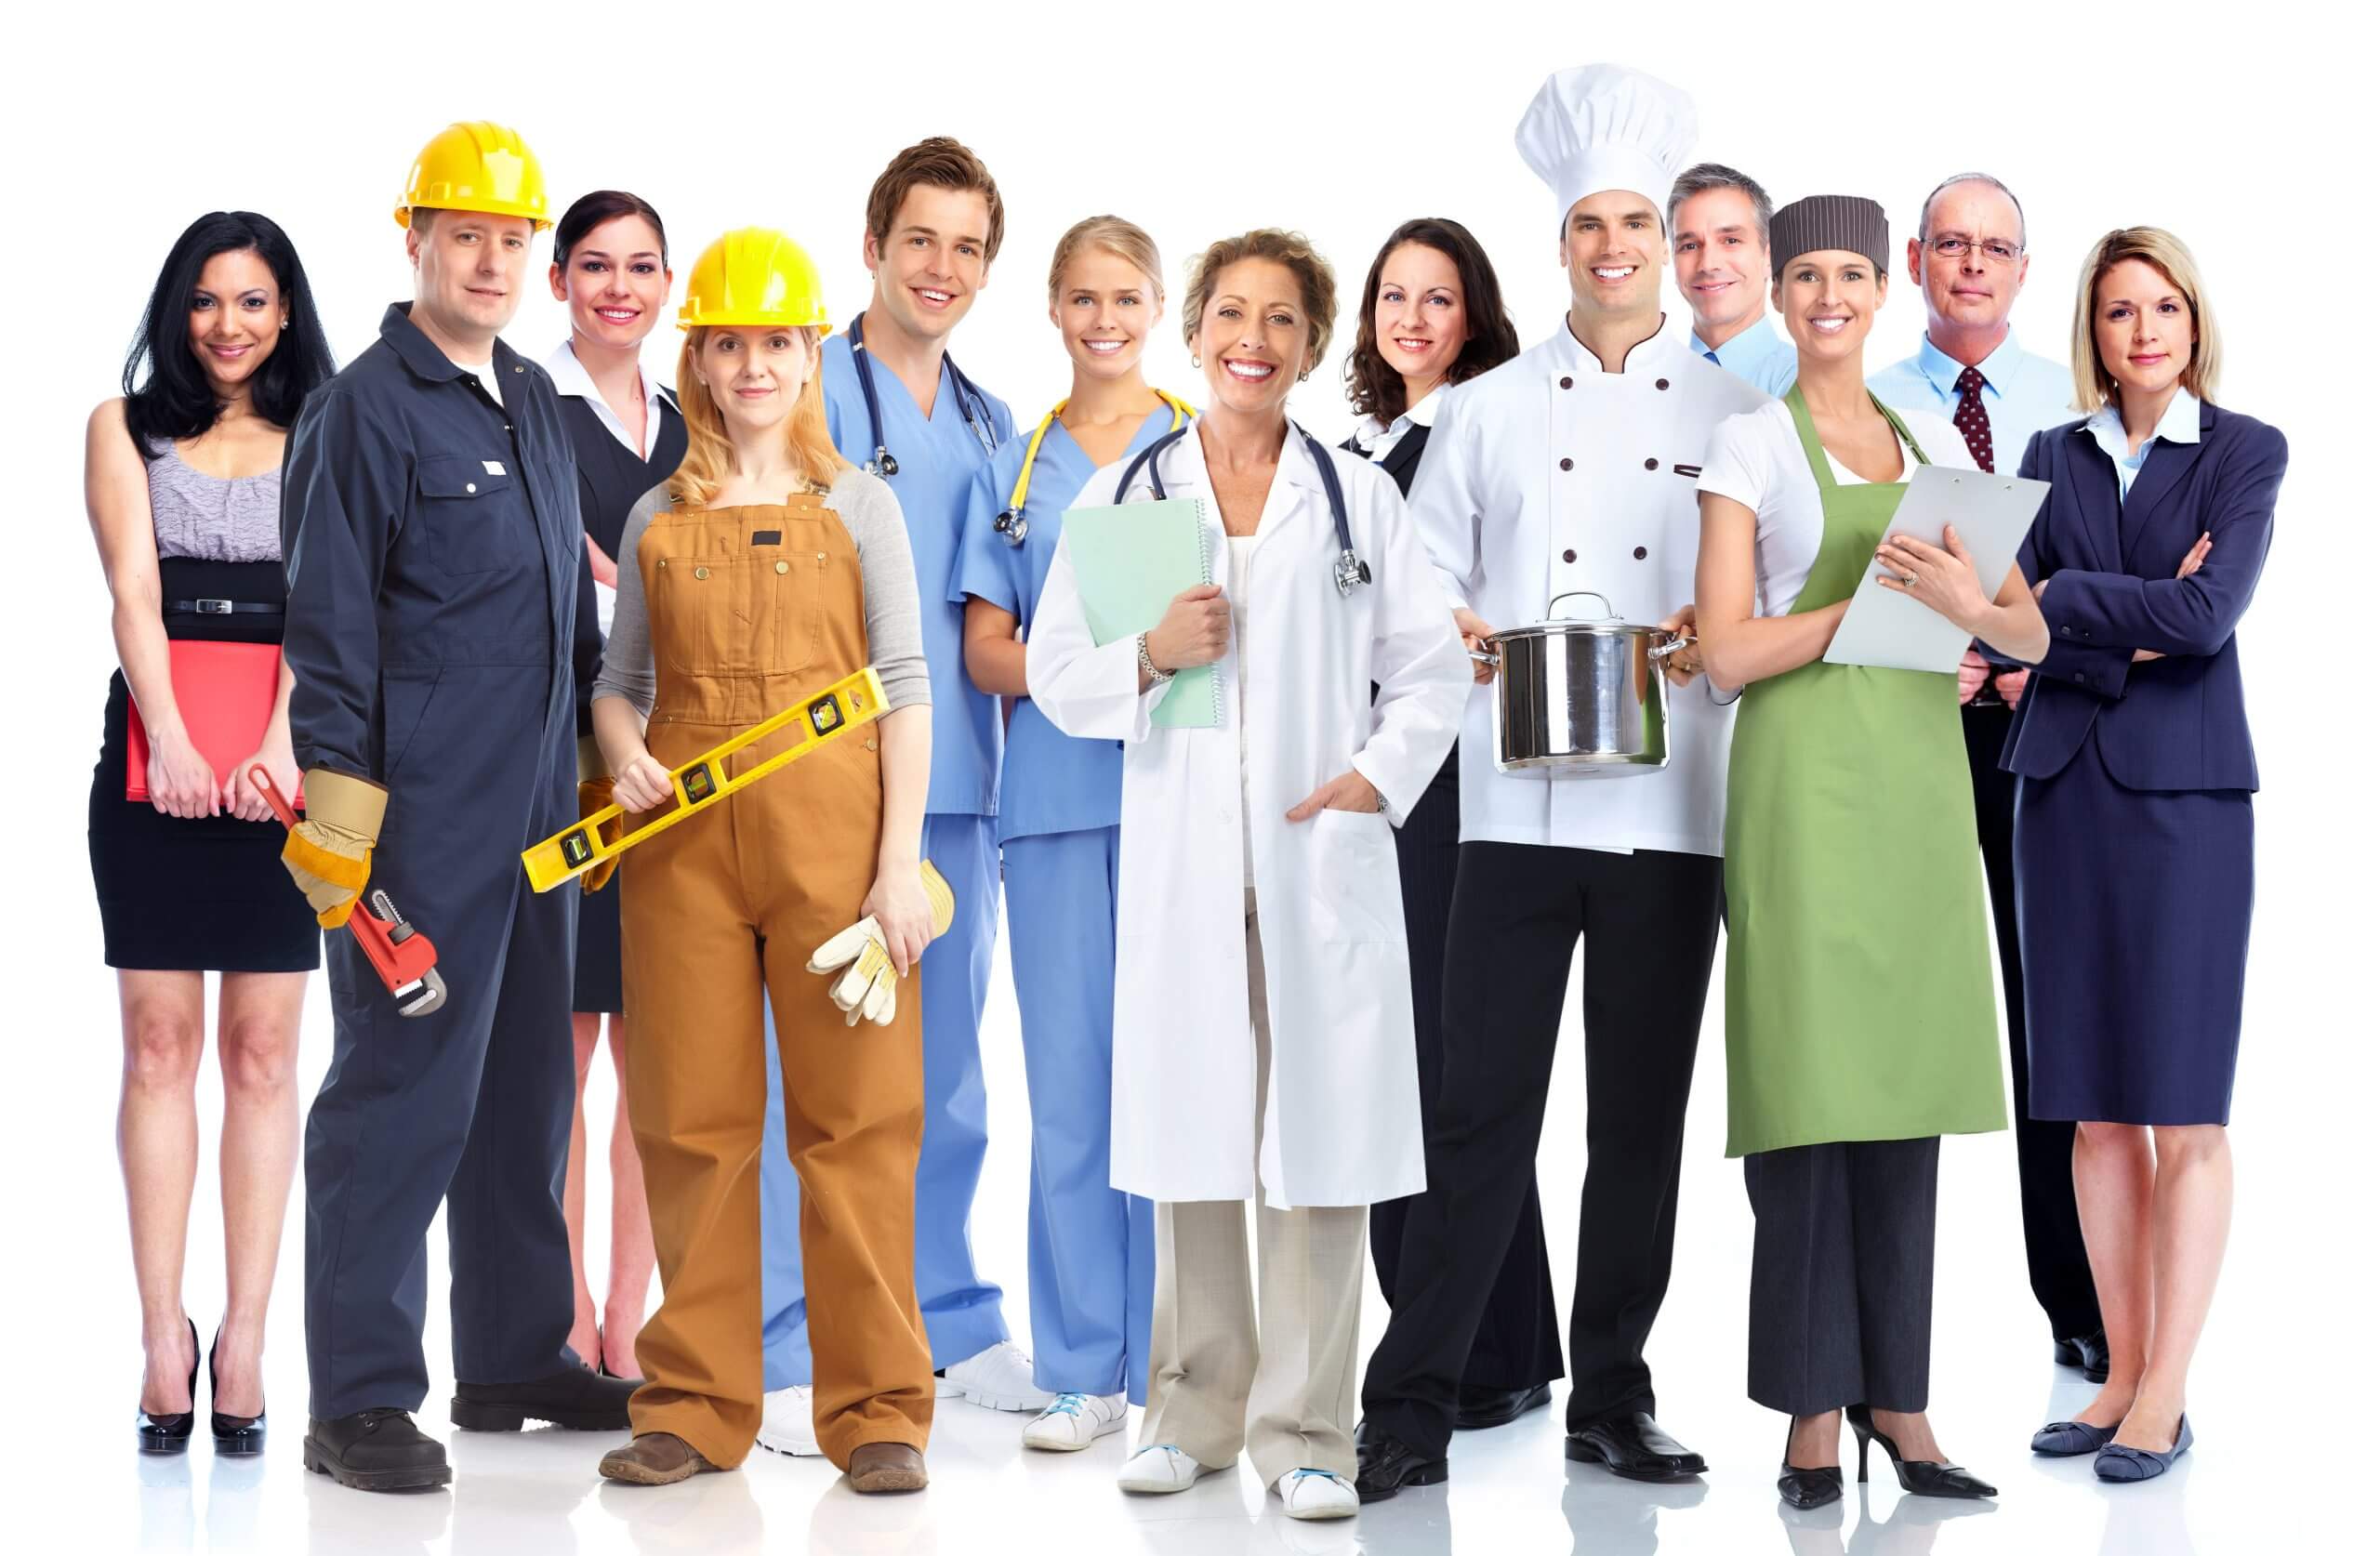 Imagen grupo de personas con diferentes uniforme de trabajo